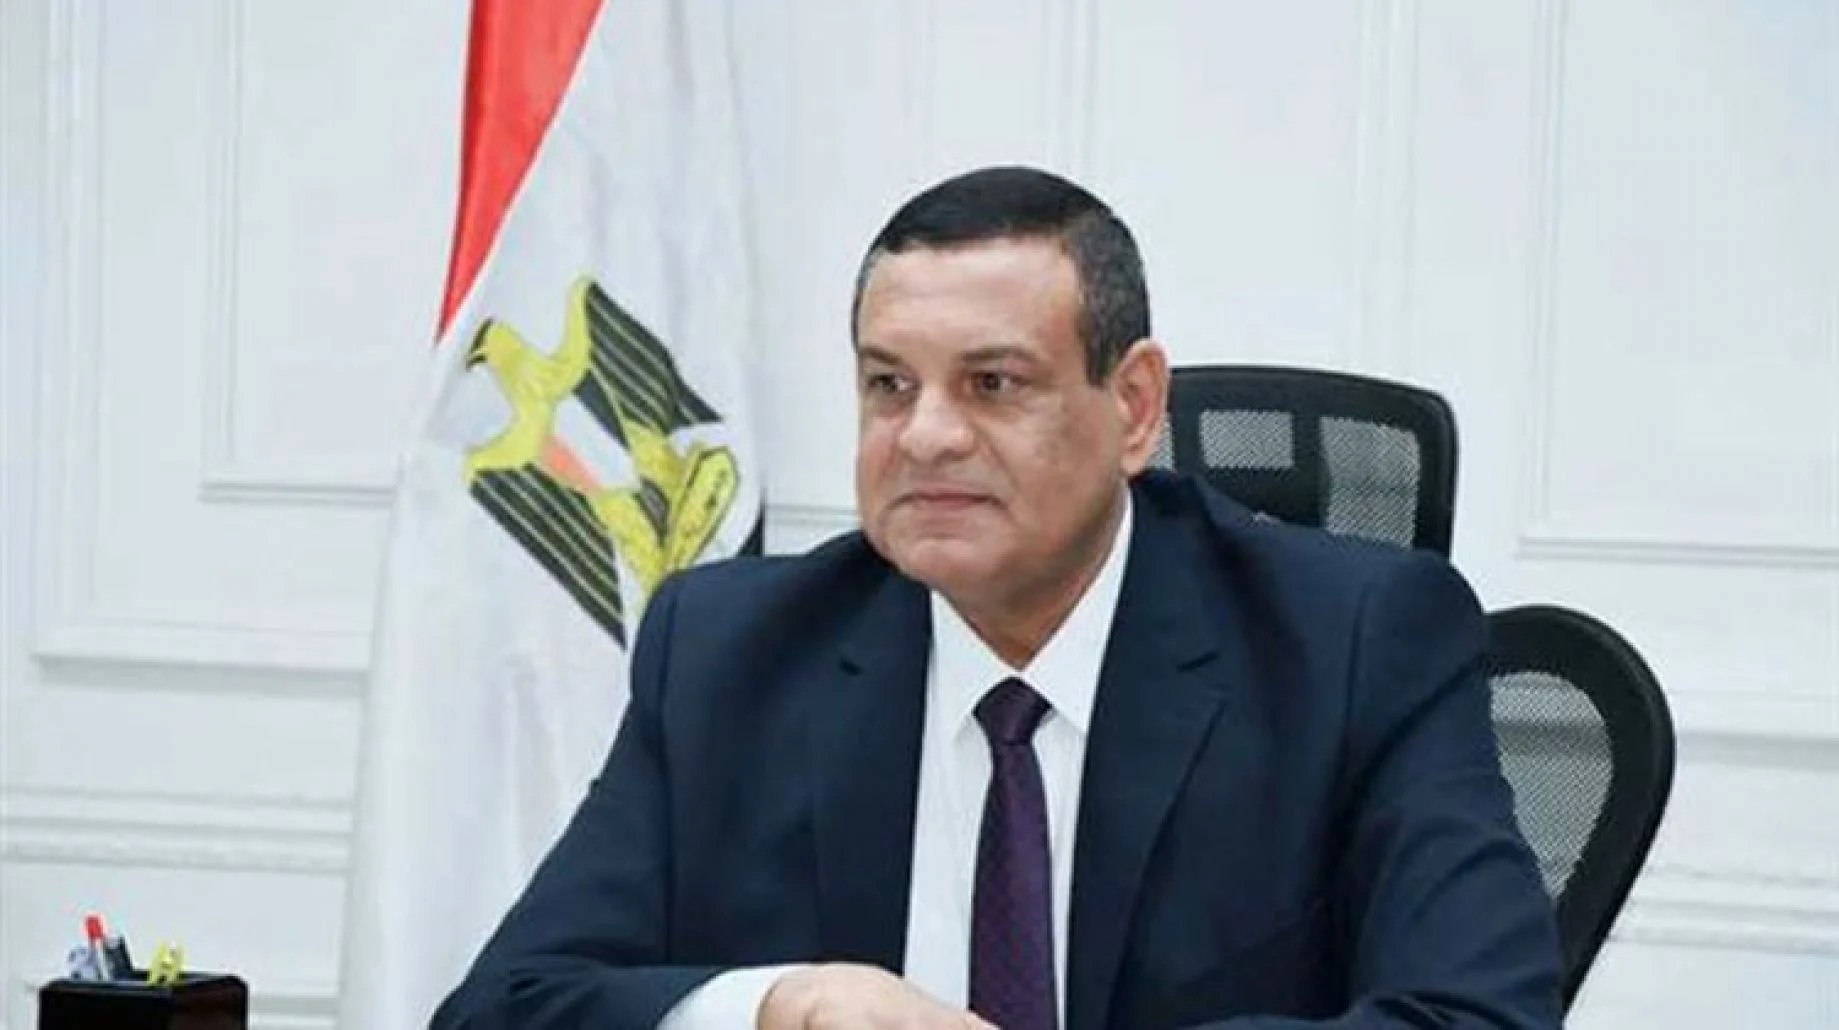 وزير التنمية المحلية المصري يتعرض لحادث مروري أثناء توجهه لمدينة العلمين الجديدة